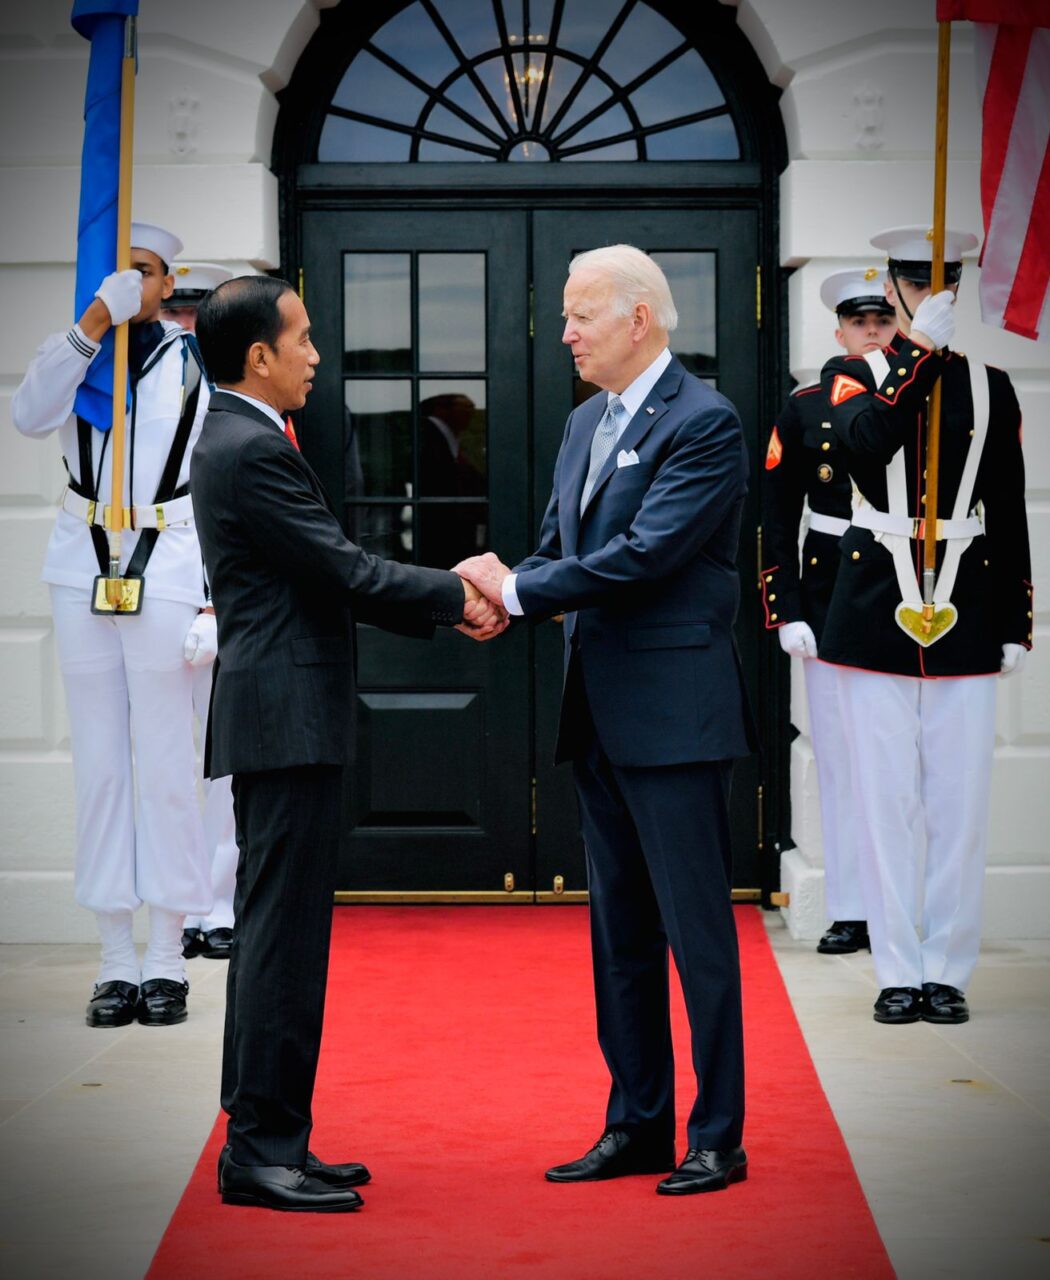 Pertemuan Presiden Jokowi dengan Joe Biden | Sekretariat Presiden RI